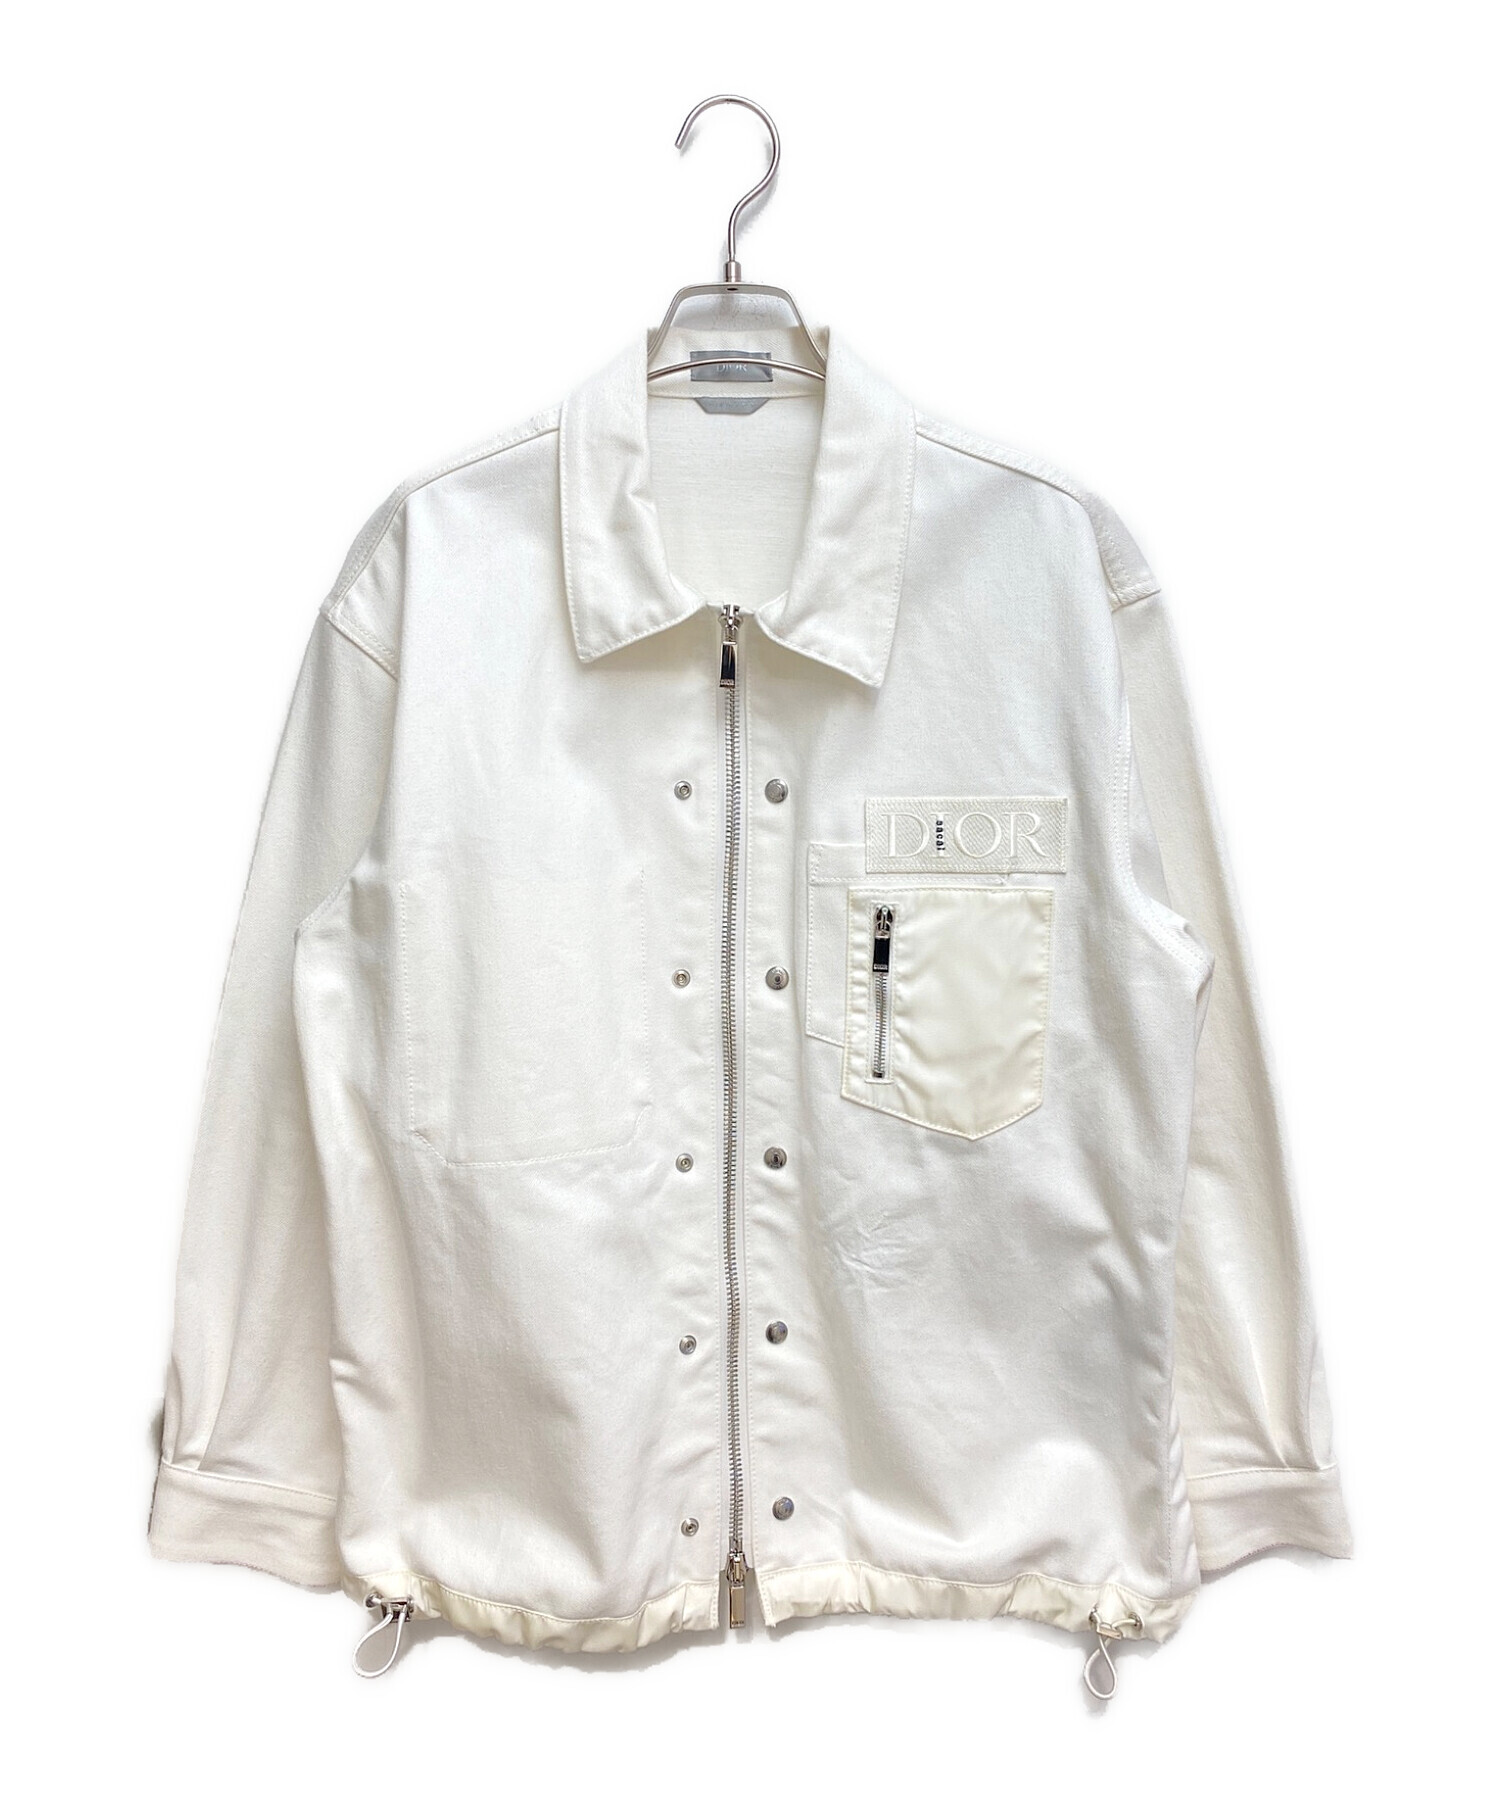 Dior (ディオール) sacai (サカイ) ナイロン切替ジップアップデニムジャケット ホワイト サイズ:50